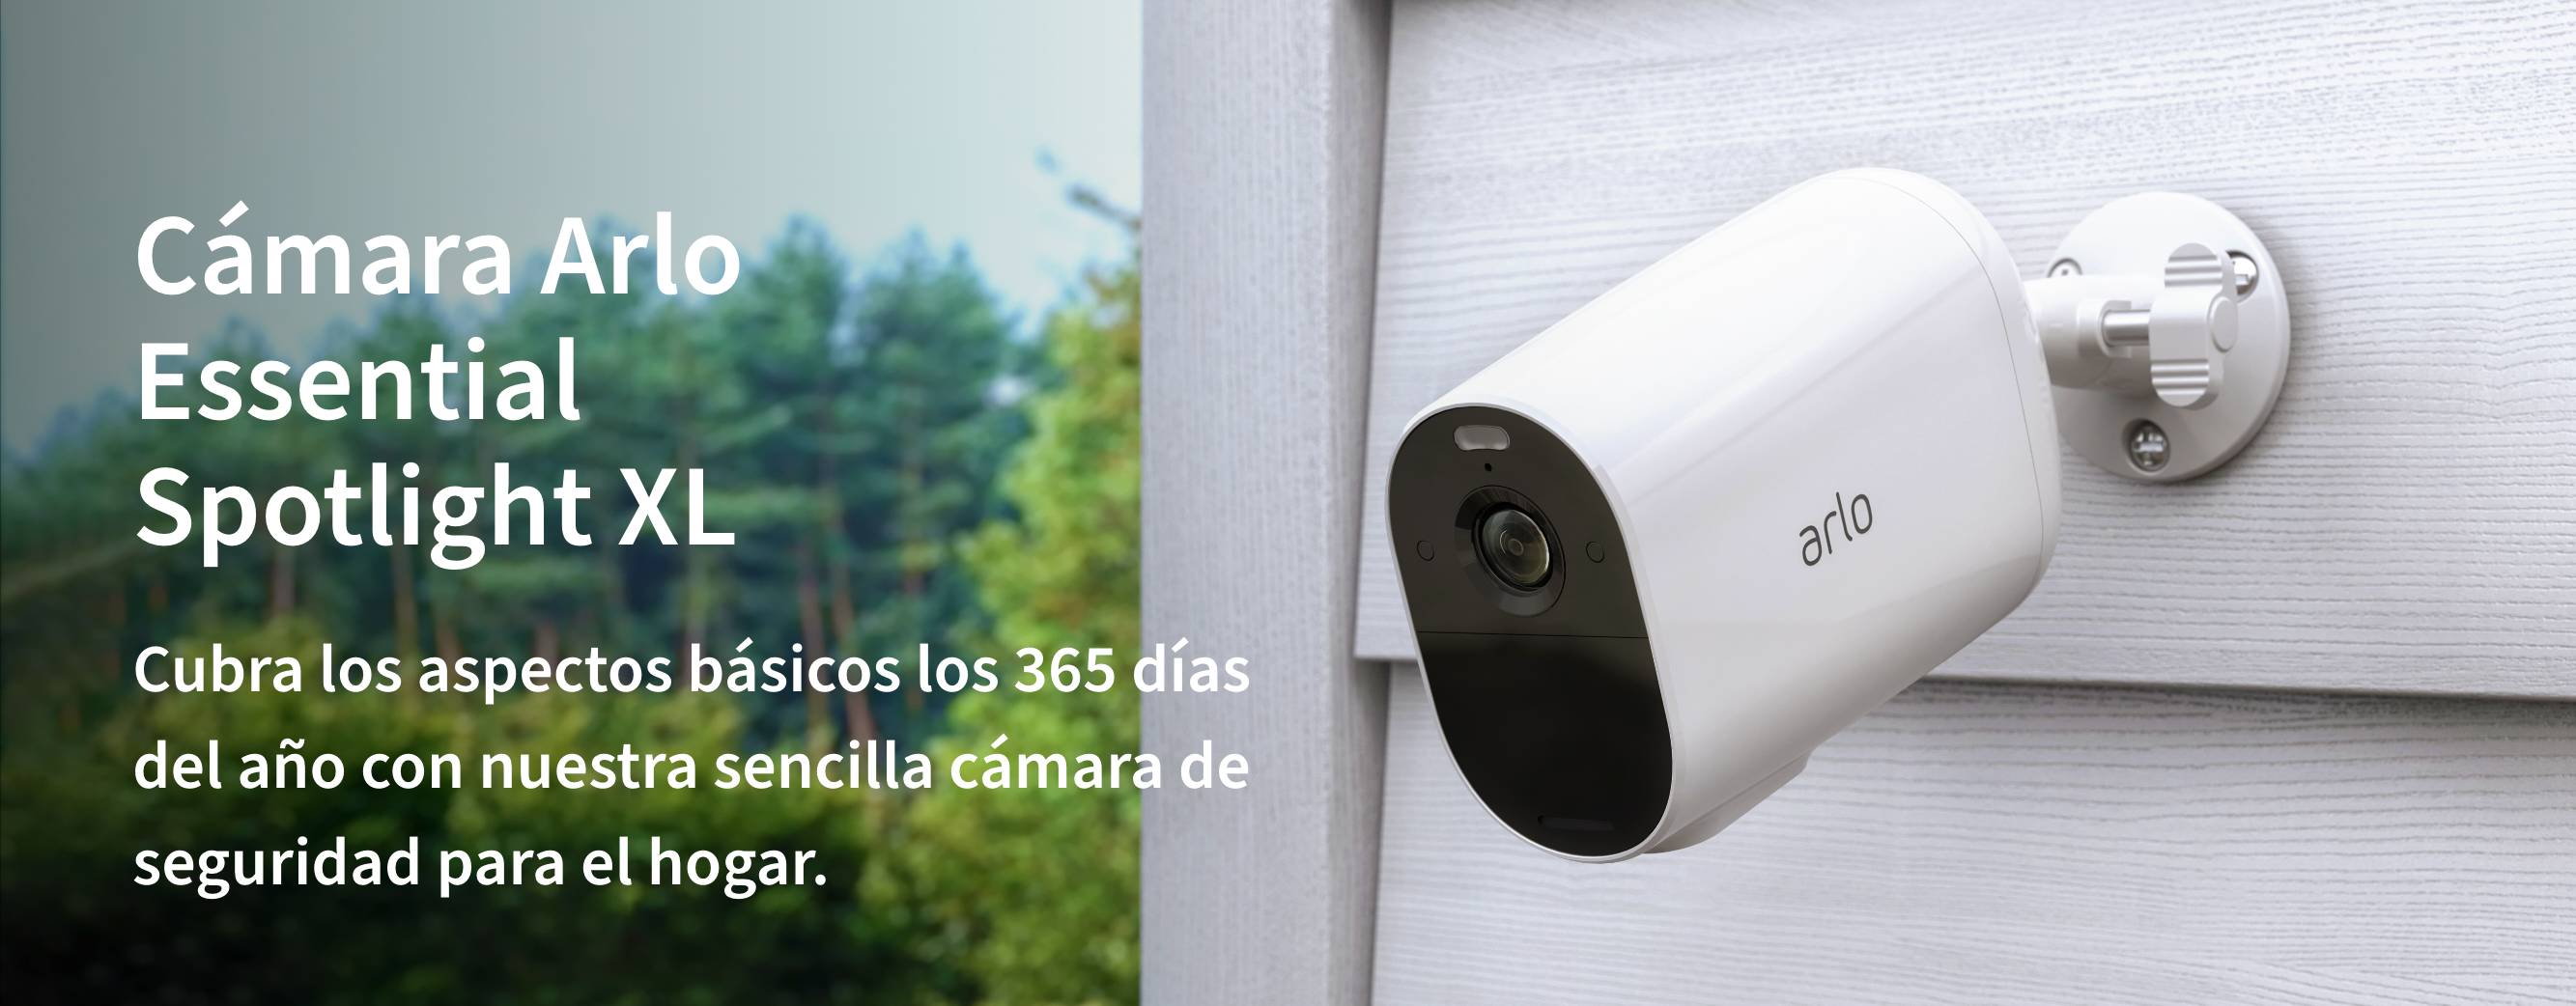 Una cámara de seguridad XL esencial de Arlo afuera en una cerca, le brinda seguridad en el hogar sencilla